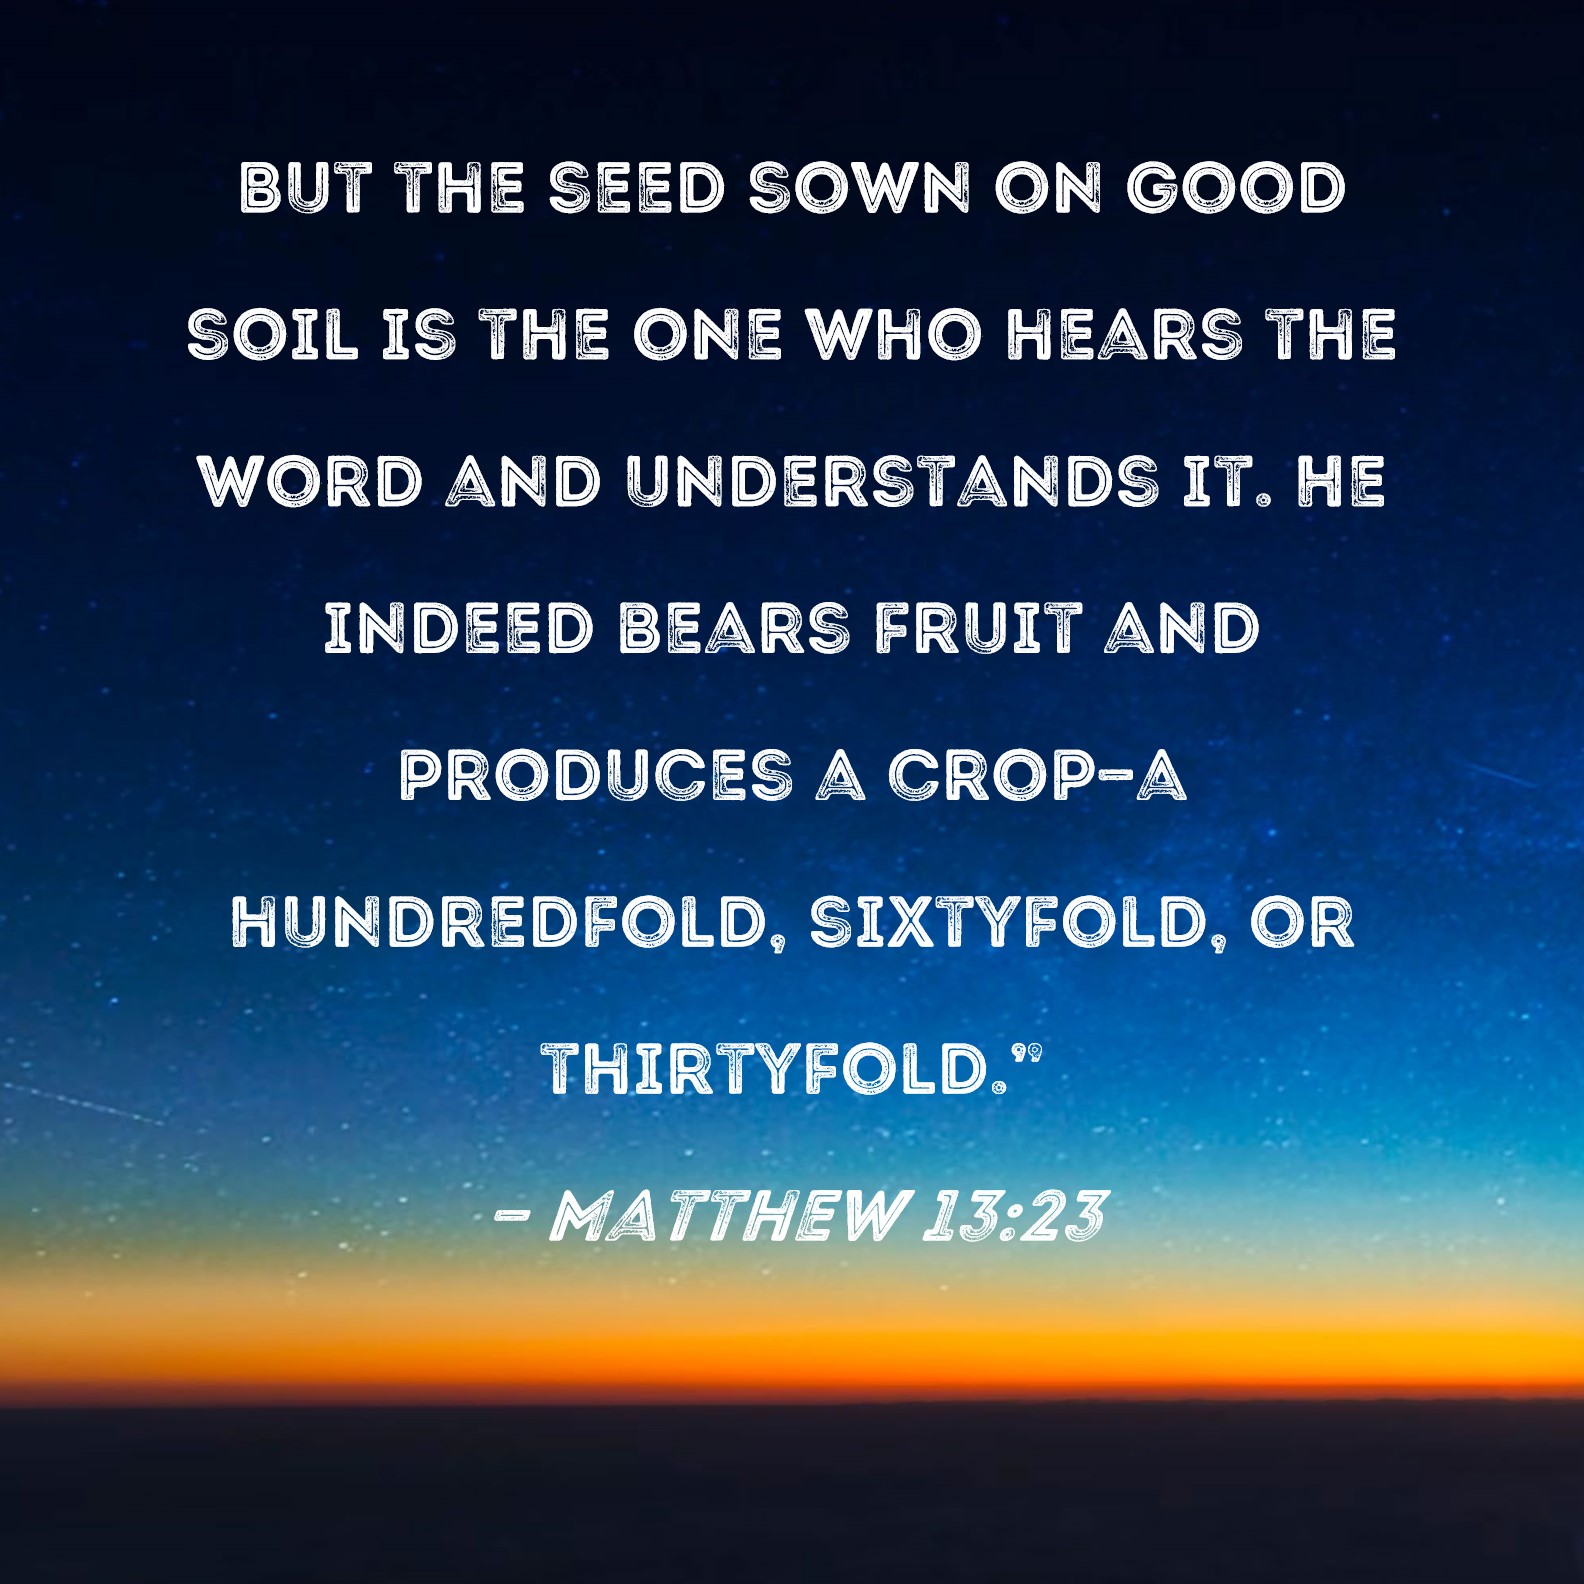 good soil bible